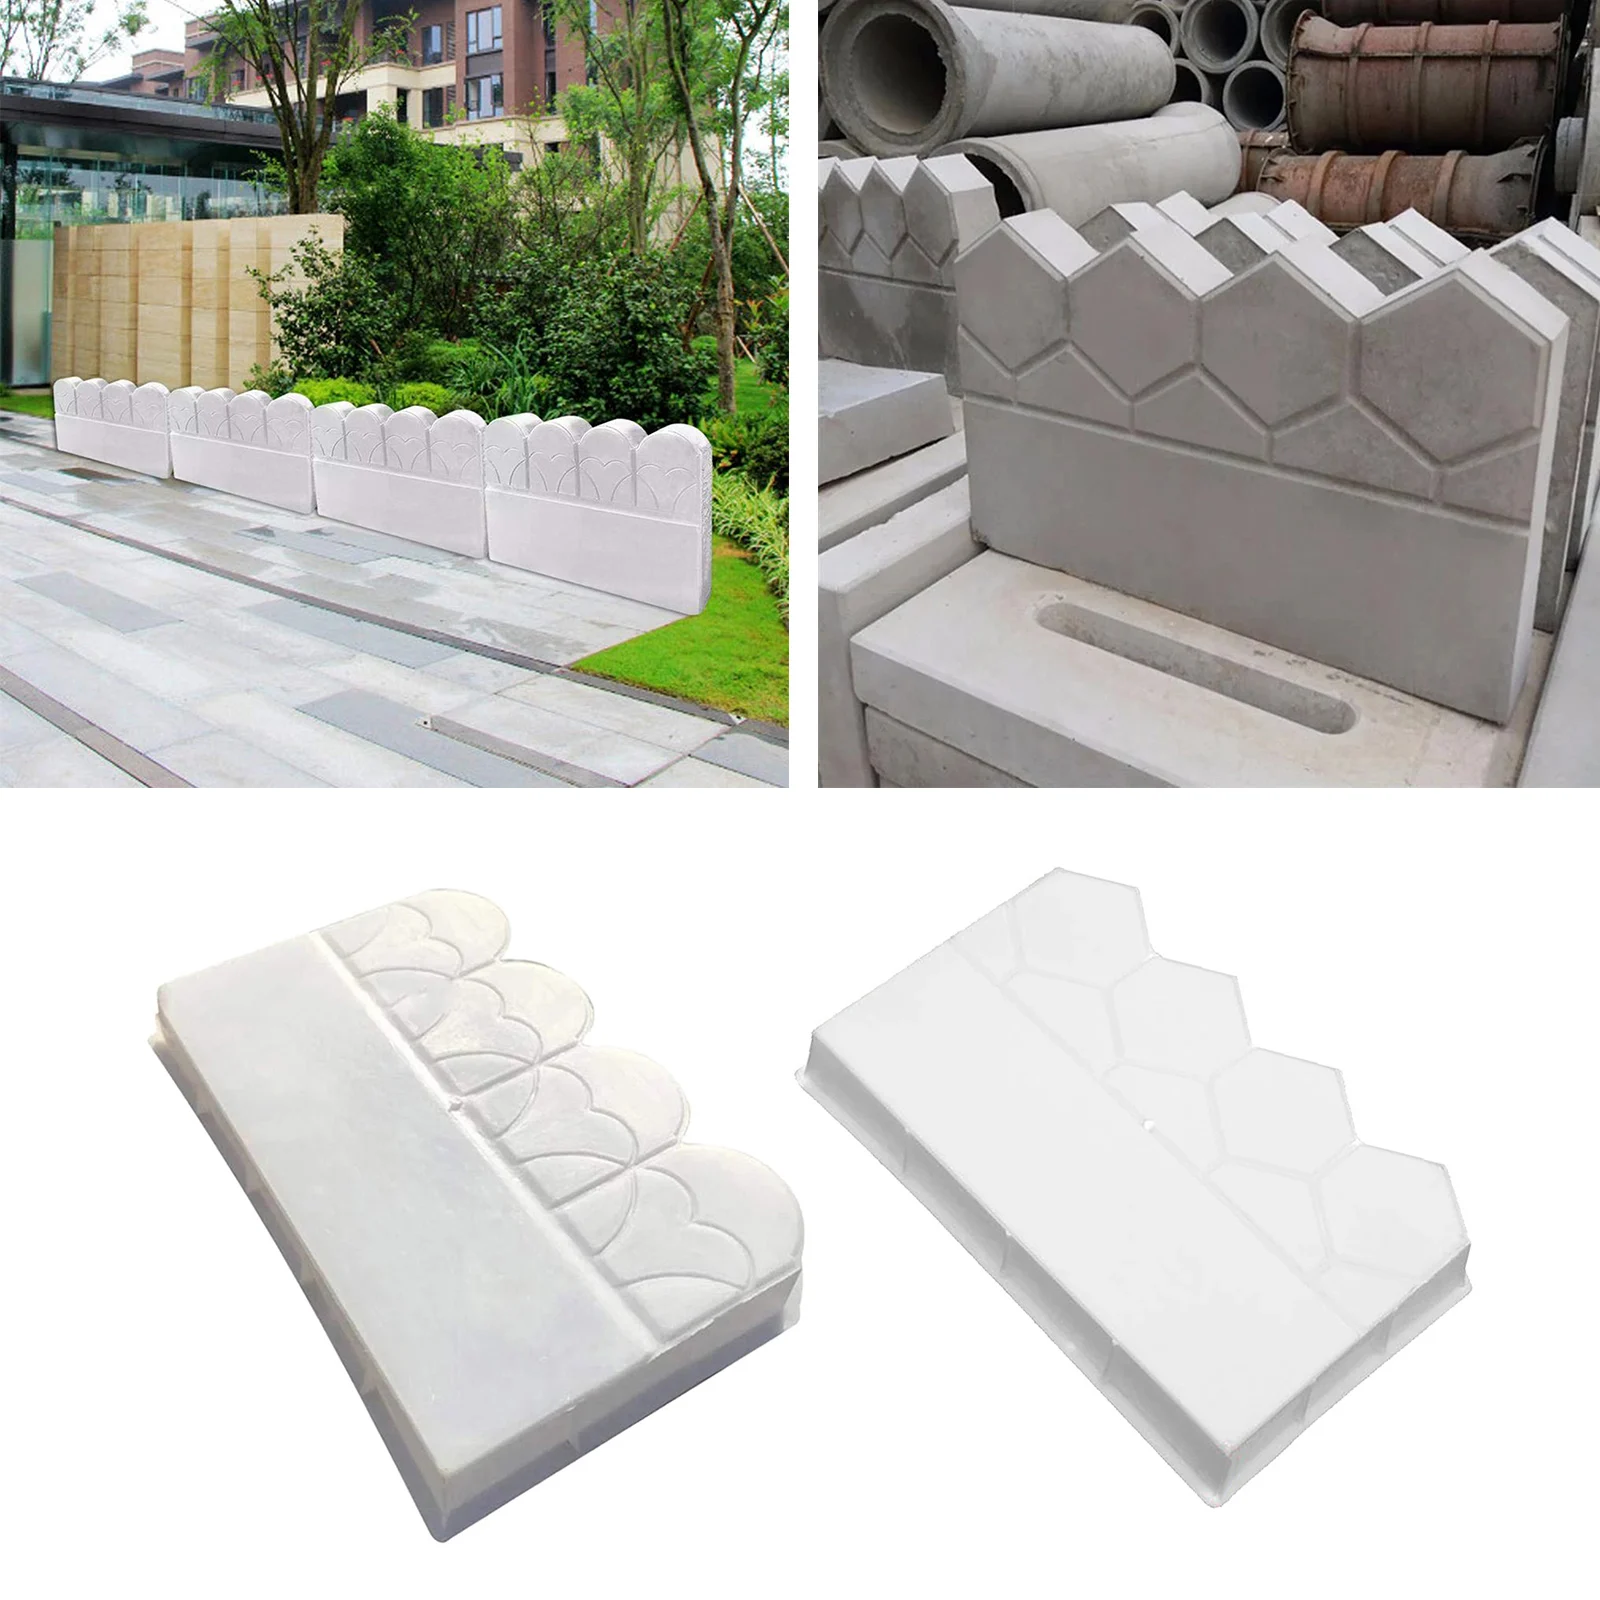 Concrete Mold Plaster Cement Garden Fence Decor DIY Flower Bed Paving Mould Reusable